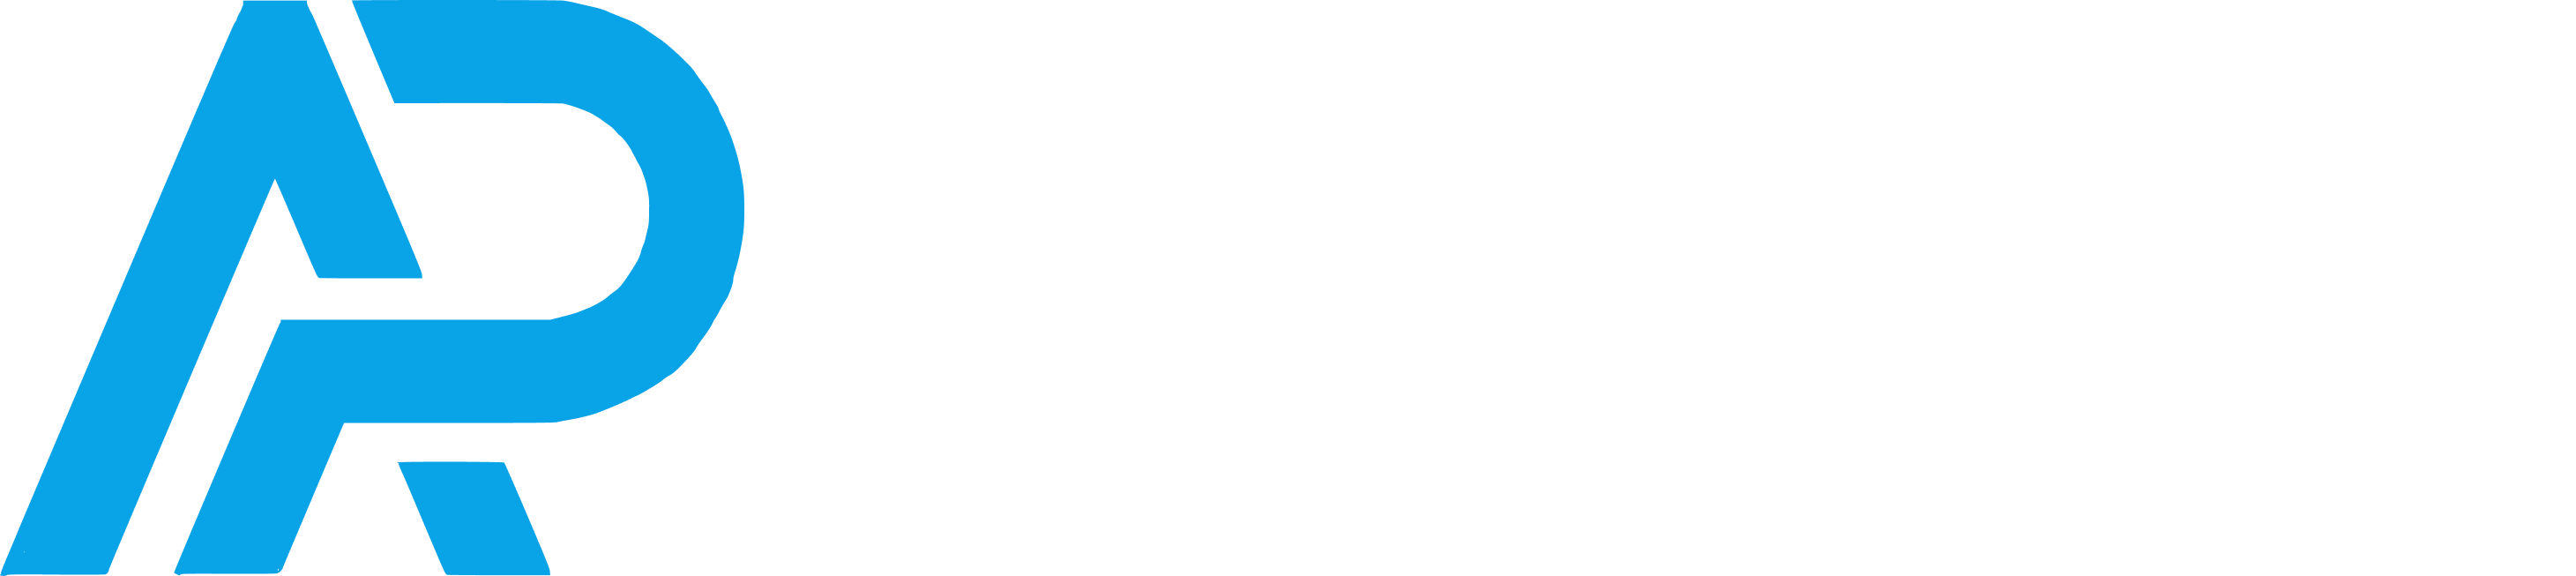 AP Central Logo